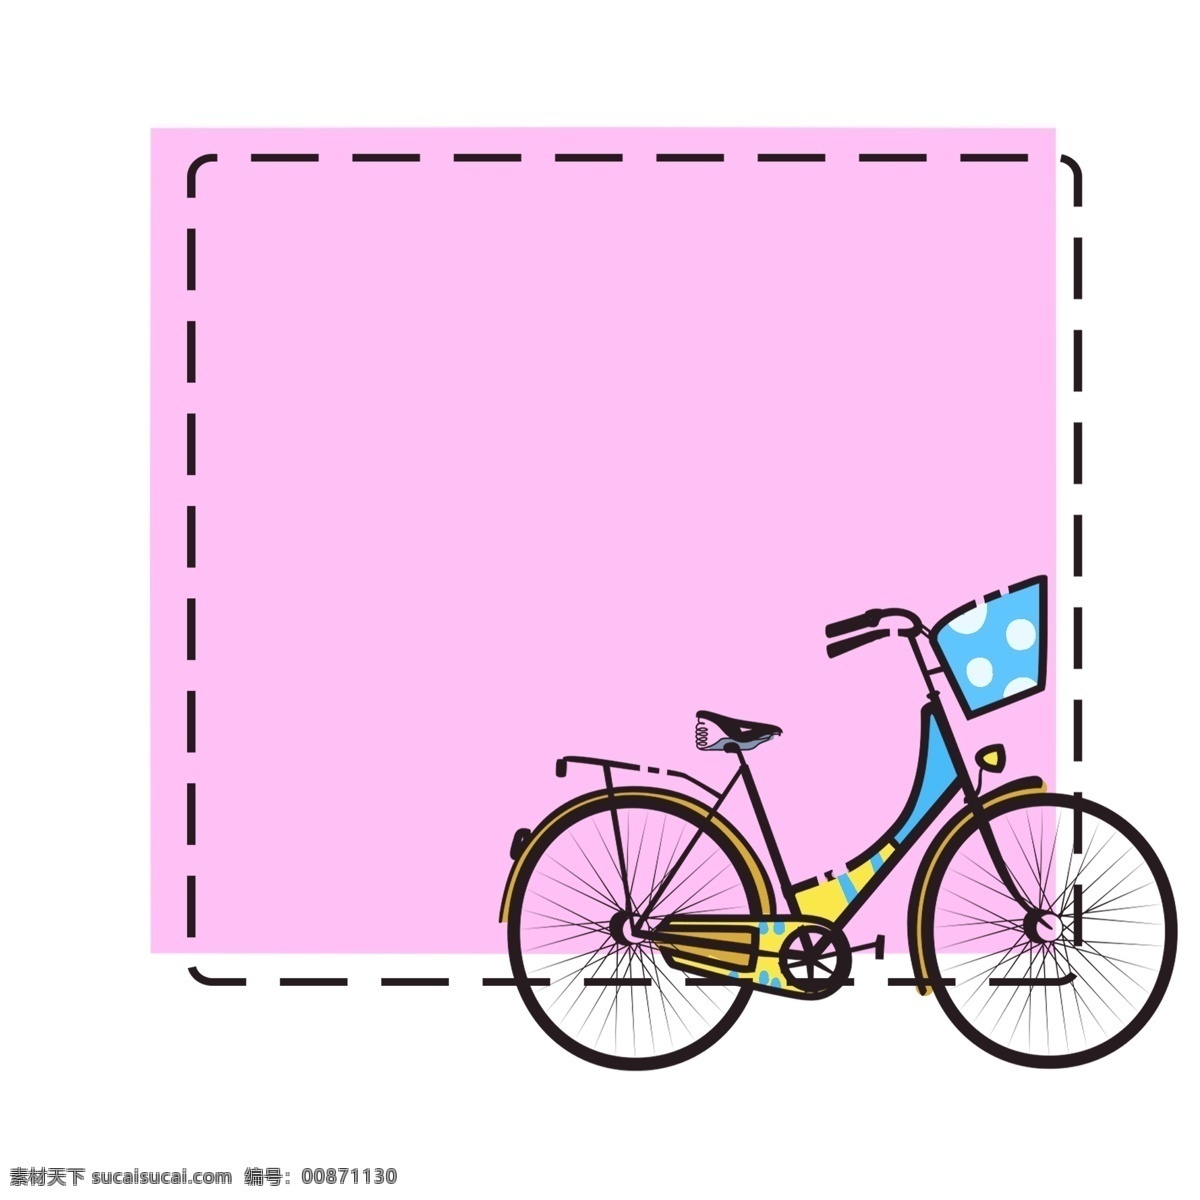 自行车 边框 手绘 插画 自行车边框 立体边框 创意边框 手绘边框 卡通边框 粉色的边框 交通工具边框